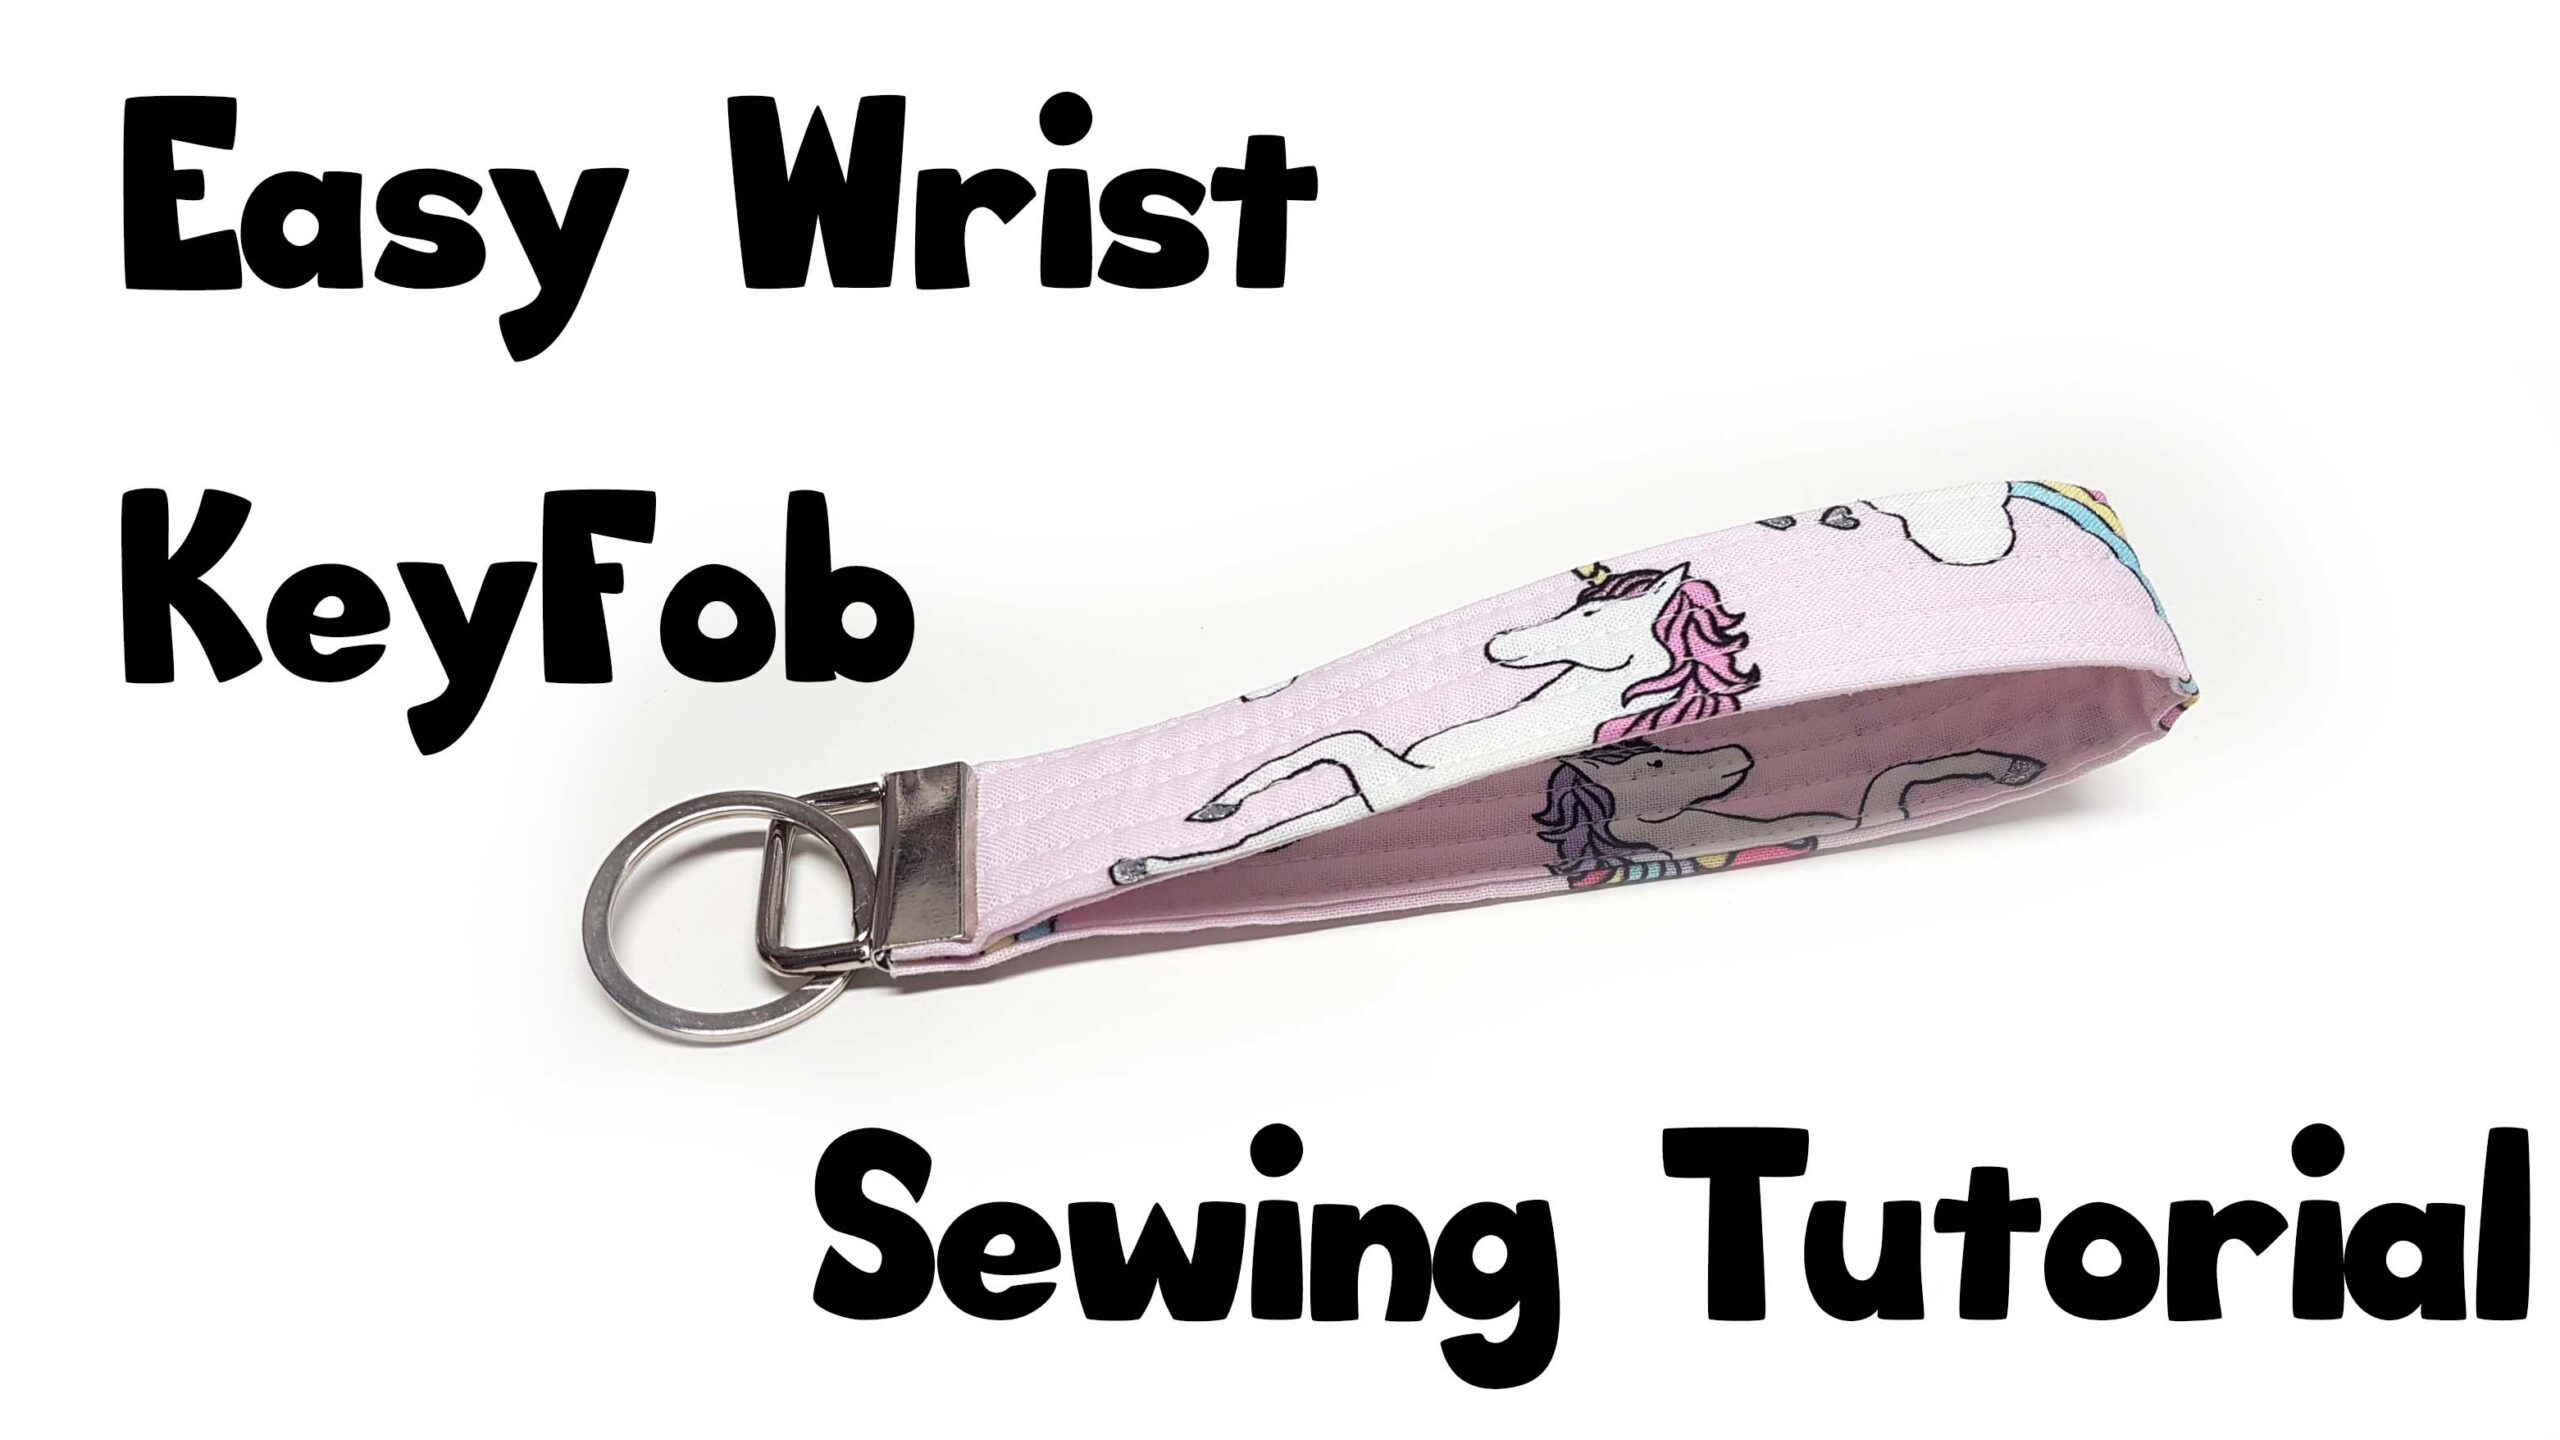 Wrist Key Fob Sewing tutorial